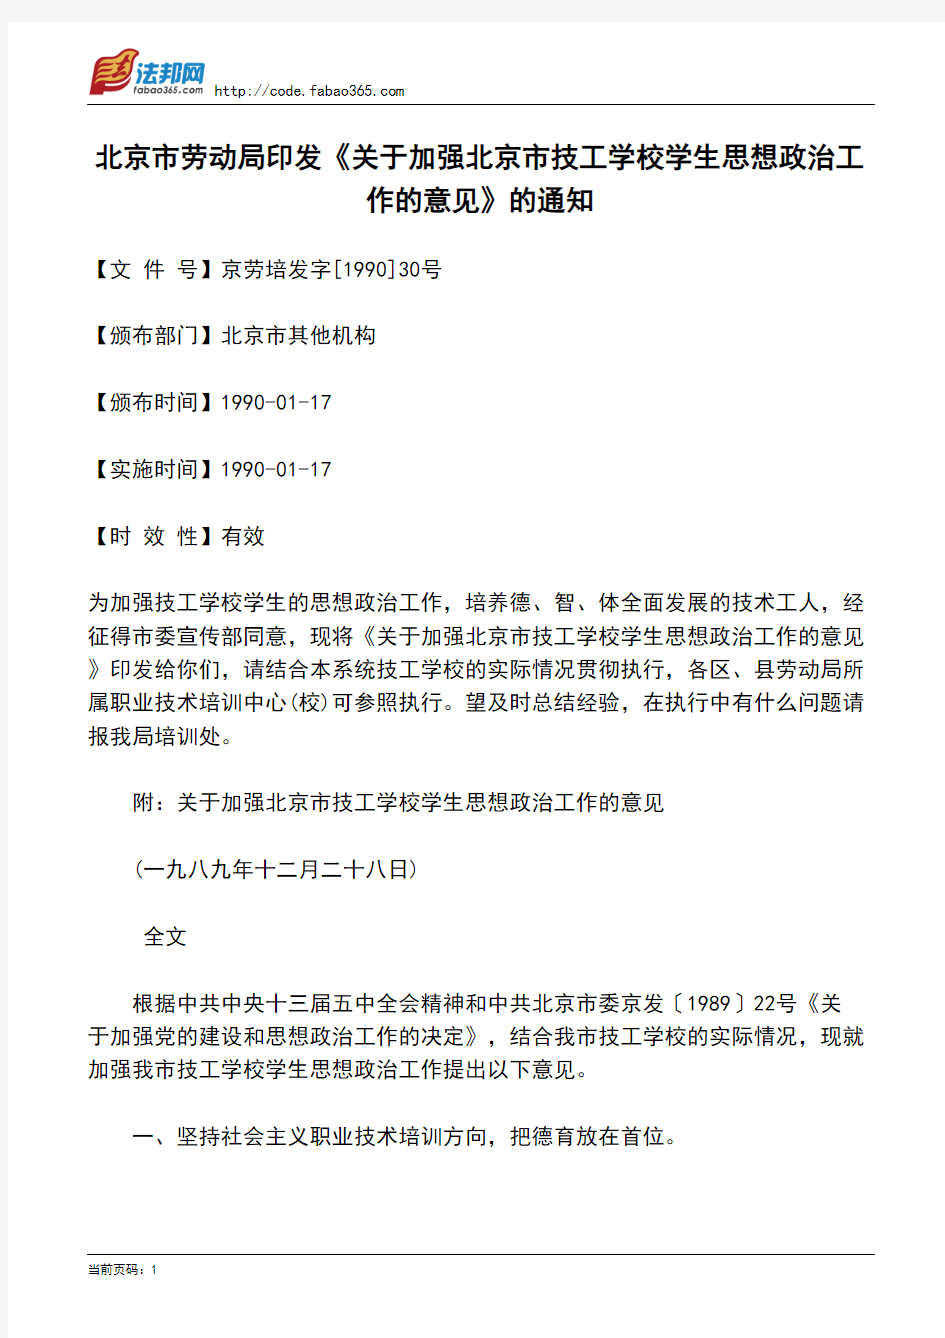 北京市劳动局印发《关于加强北京市技工学校学生思想政治工作的意见》的通知